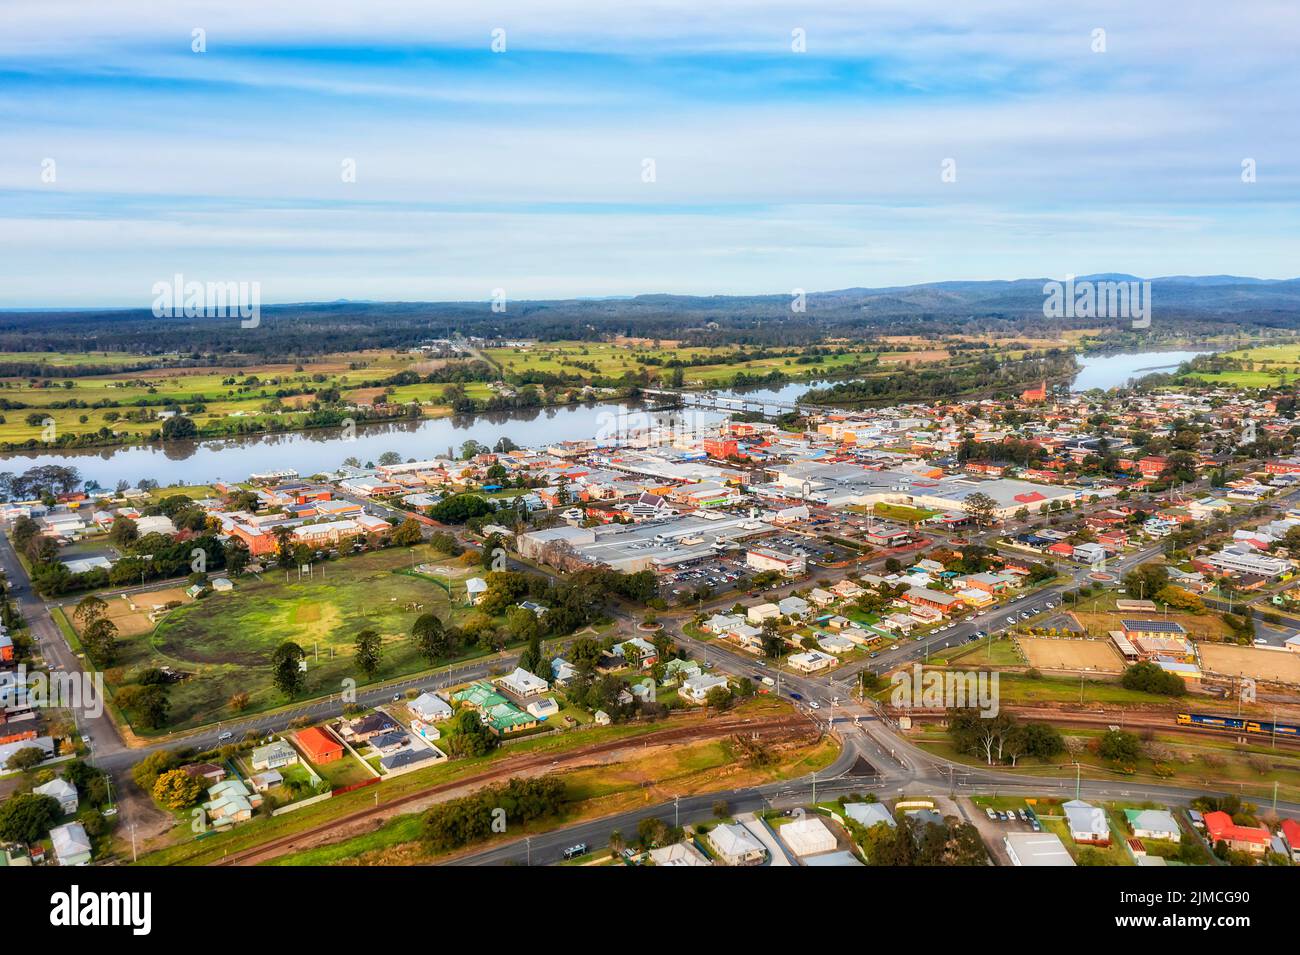 El distrito comercial del centro de la ciudad de Taree y los suburbios residenciales alrededor de las orillas del puente de Marting del río Manning - paisaje urbano aéreo. Foto de stock